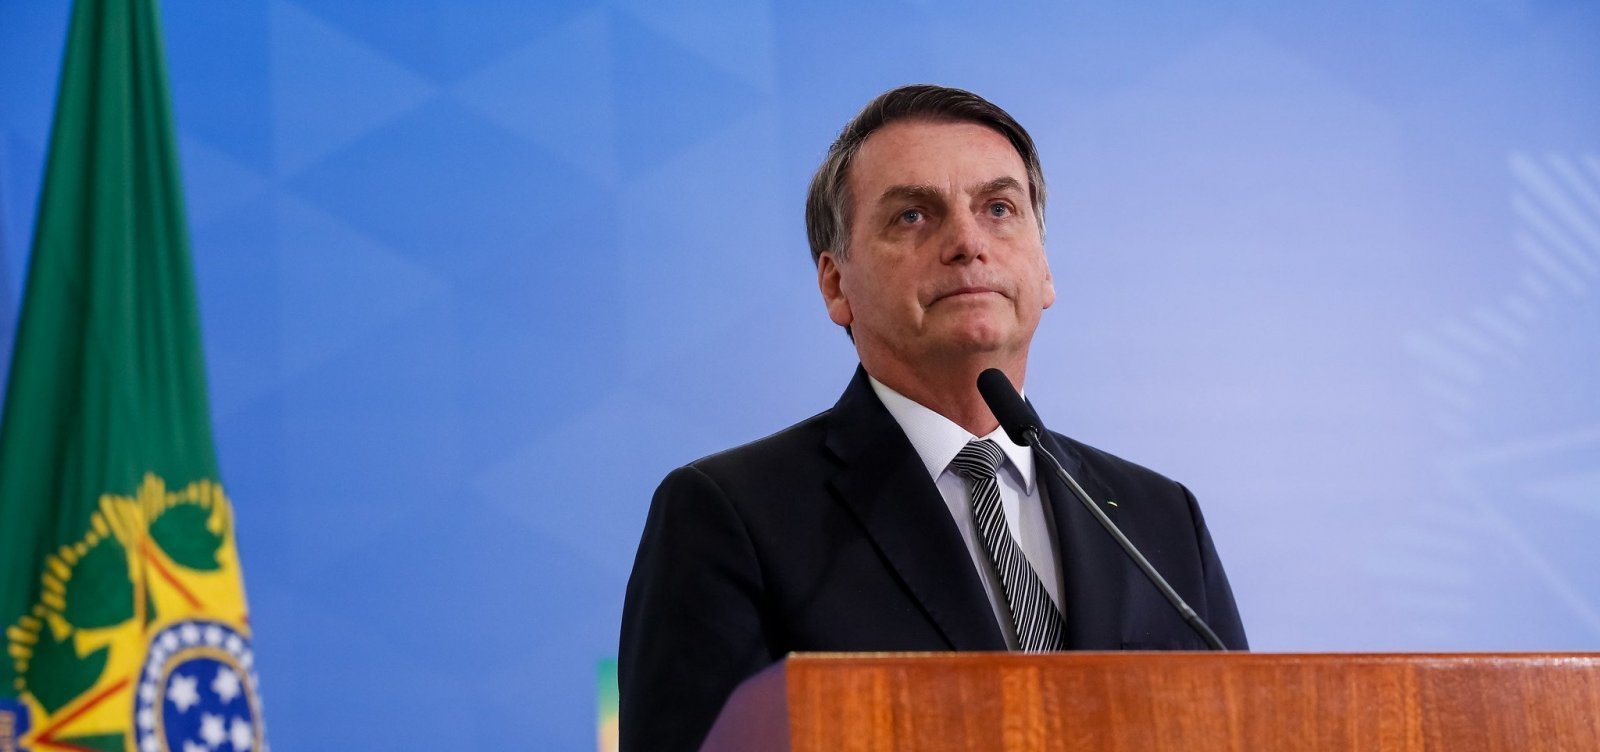 Dispensamos apoio de quem pratica violência contra opositores, diz Bolsonaro